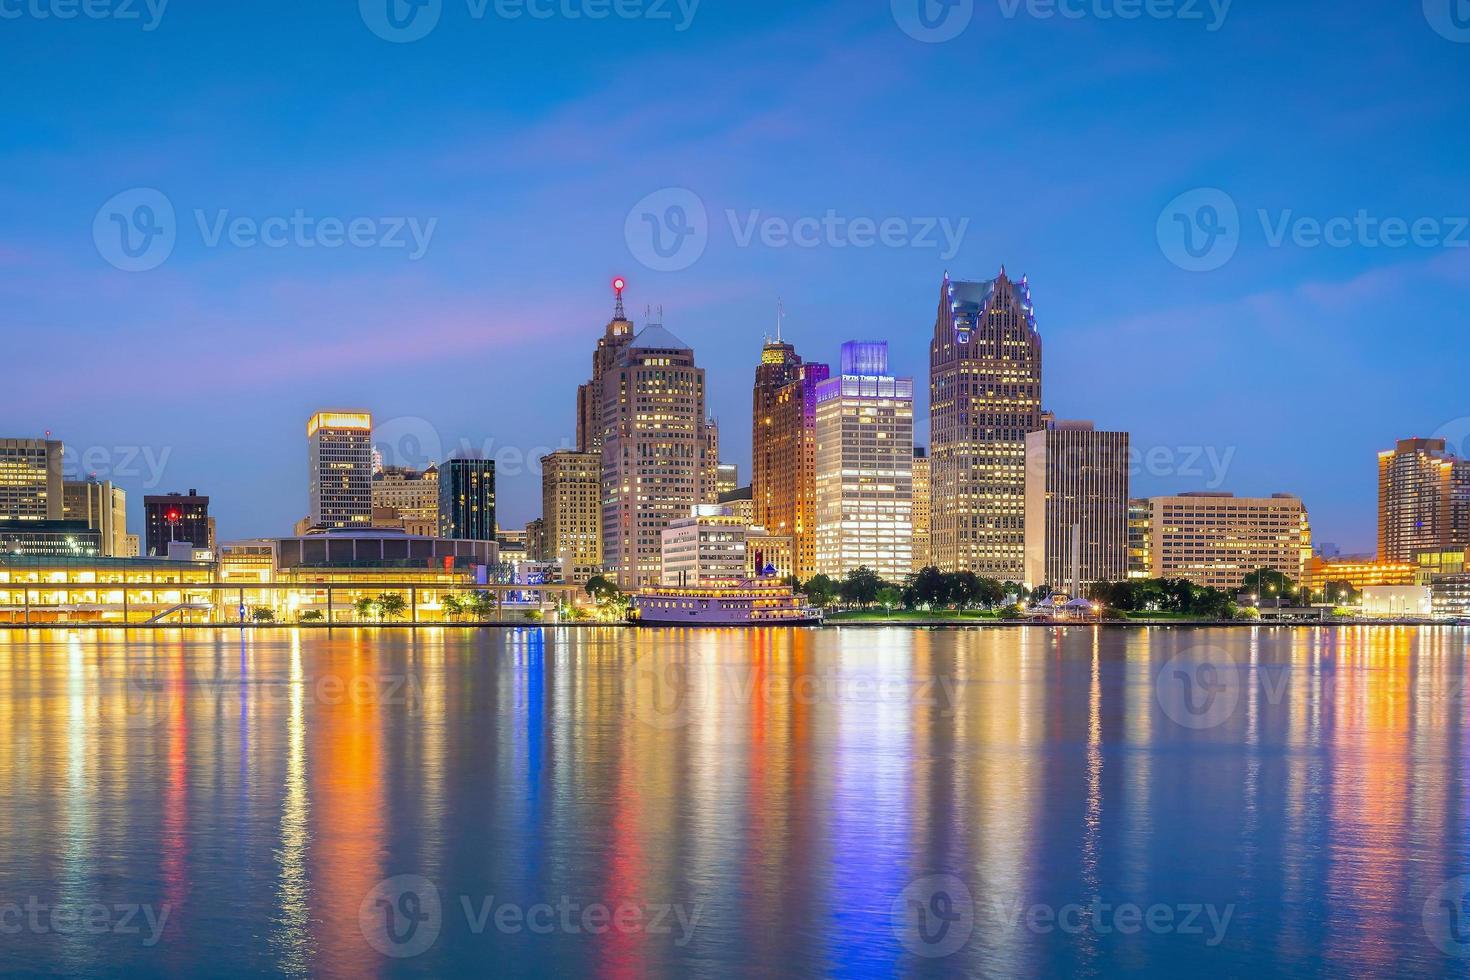 Stadtbild der Skyline von Detroit in Michigan, USA bei Sonnenuntergang foto